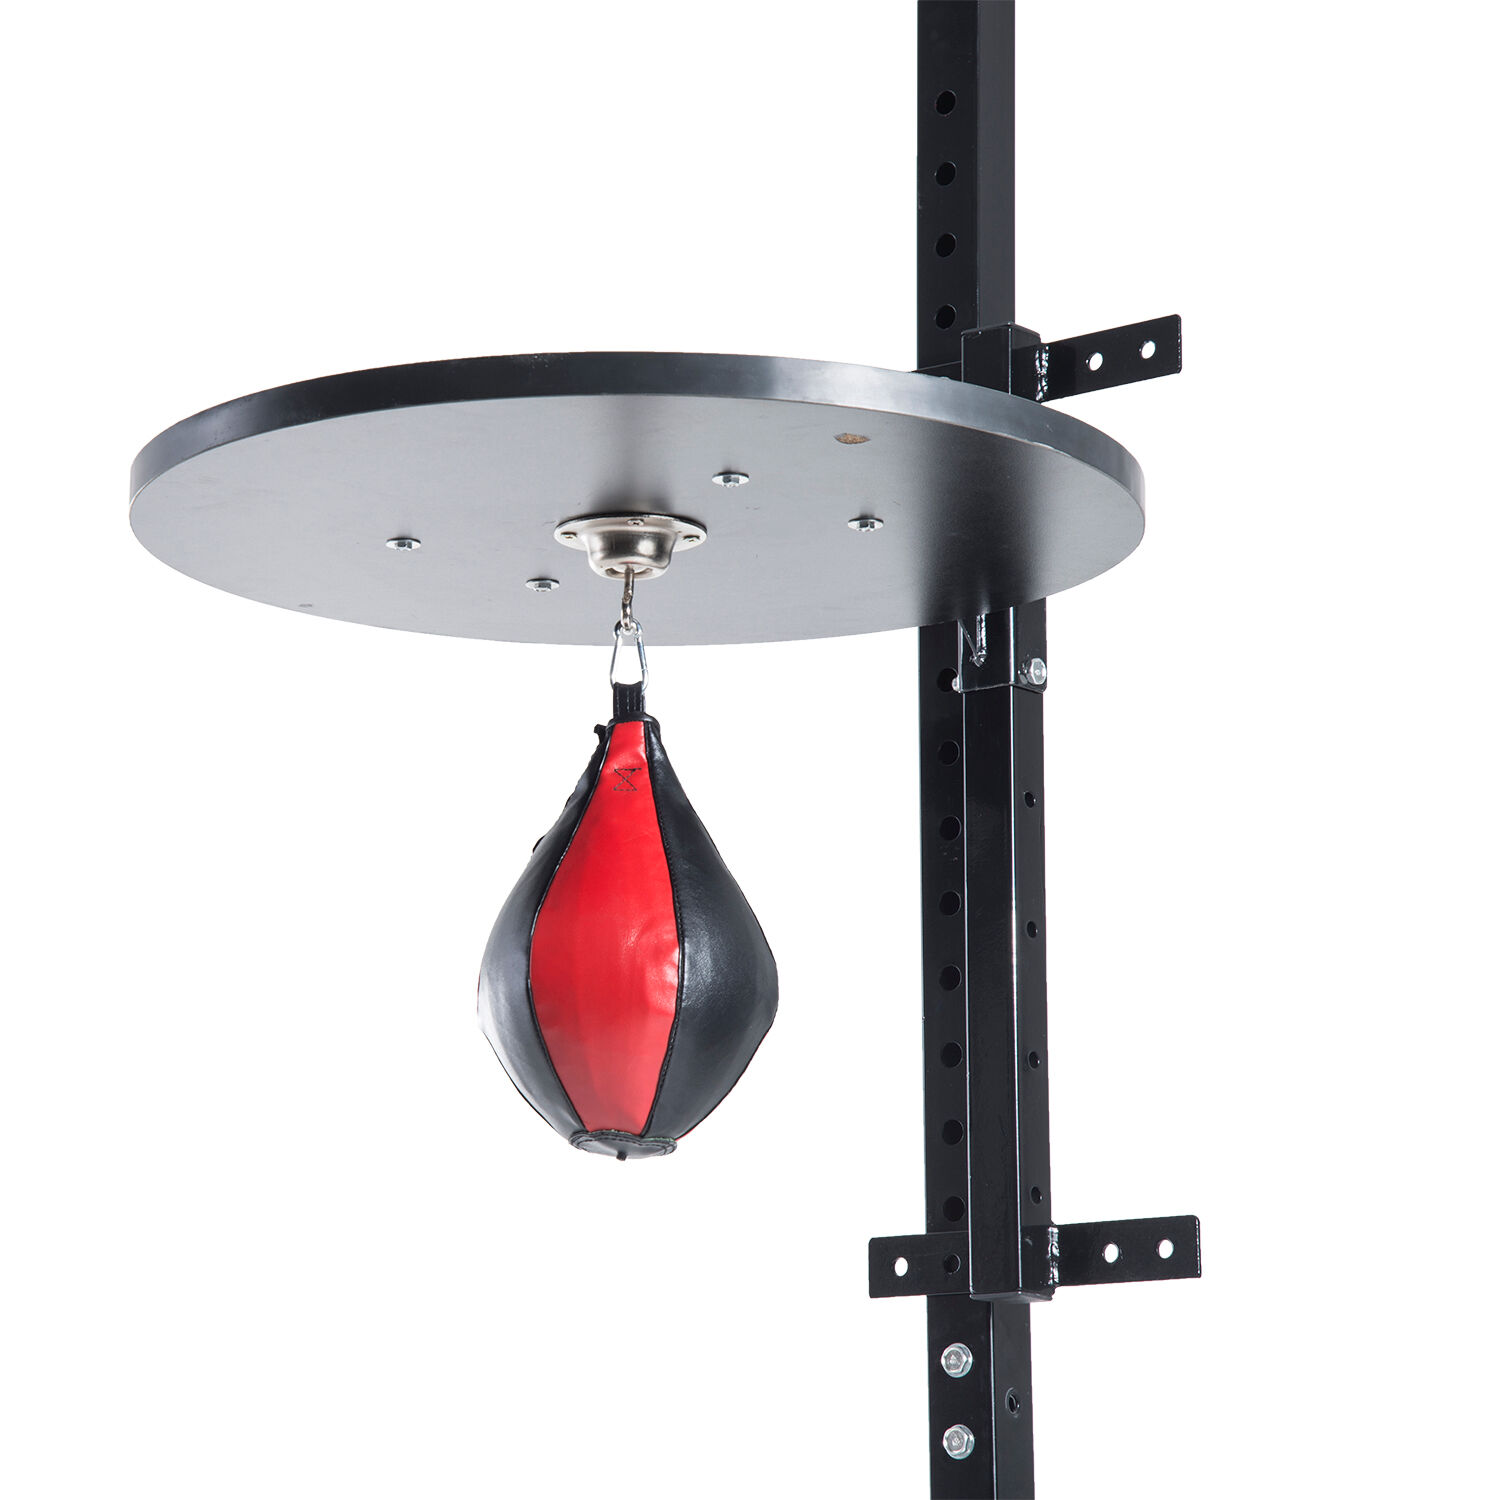 HOMCOM Punching ball poire de vitesse boxe avec support plateau tournant composite acier revêtement synthétique rouge noir